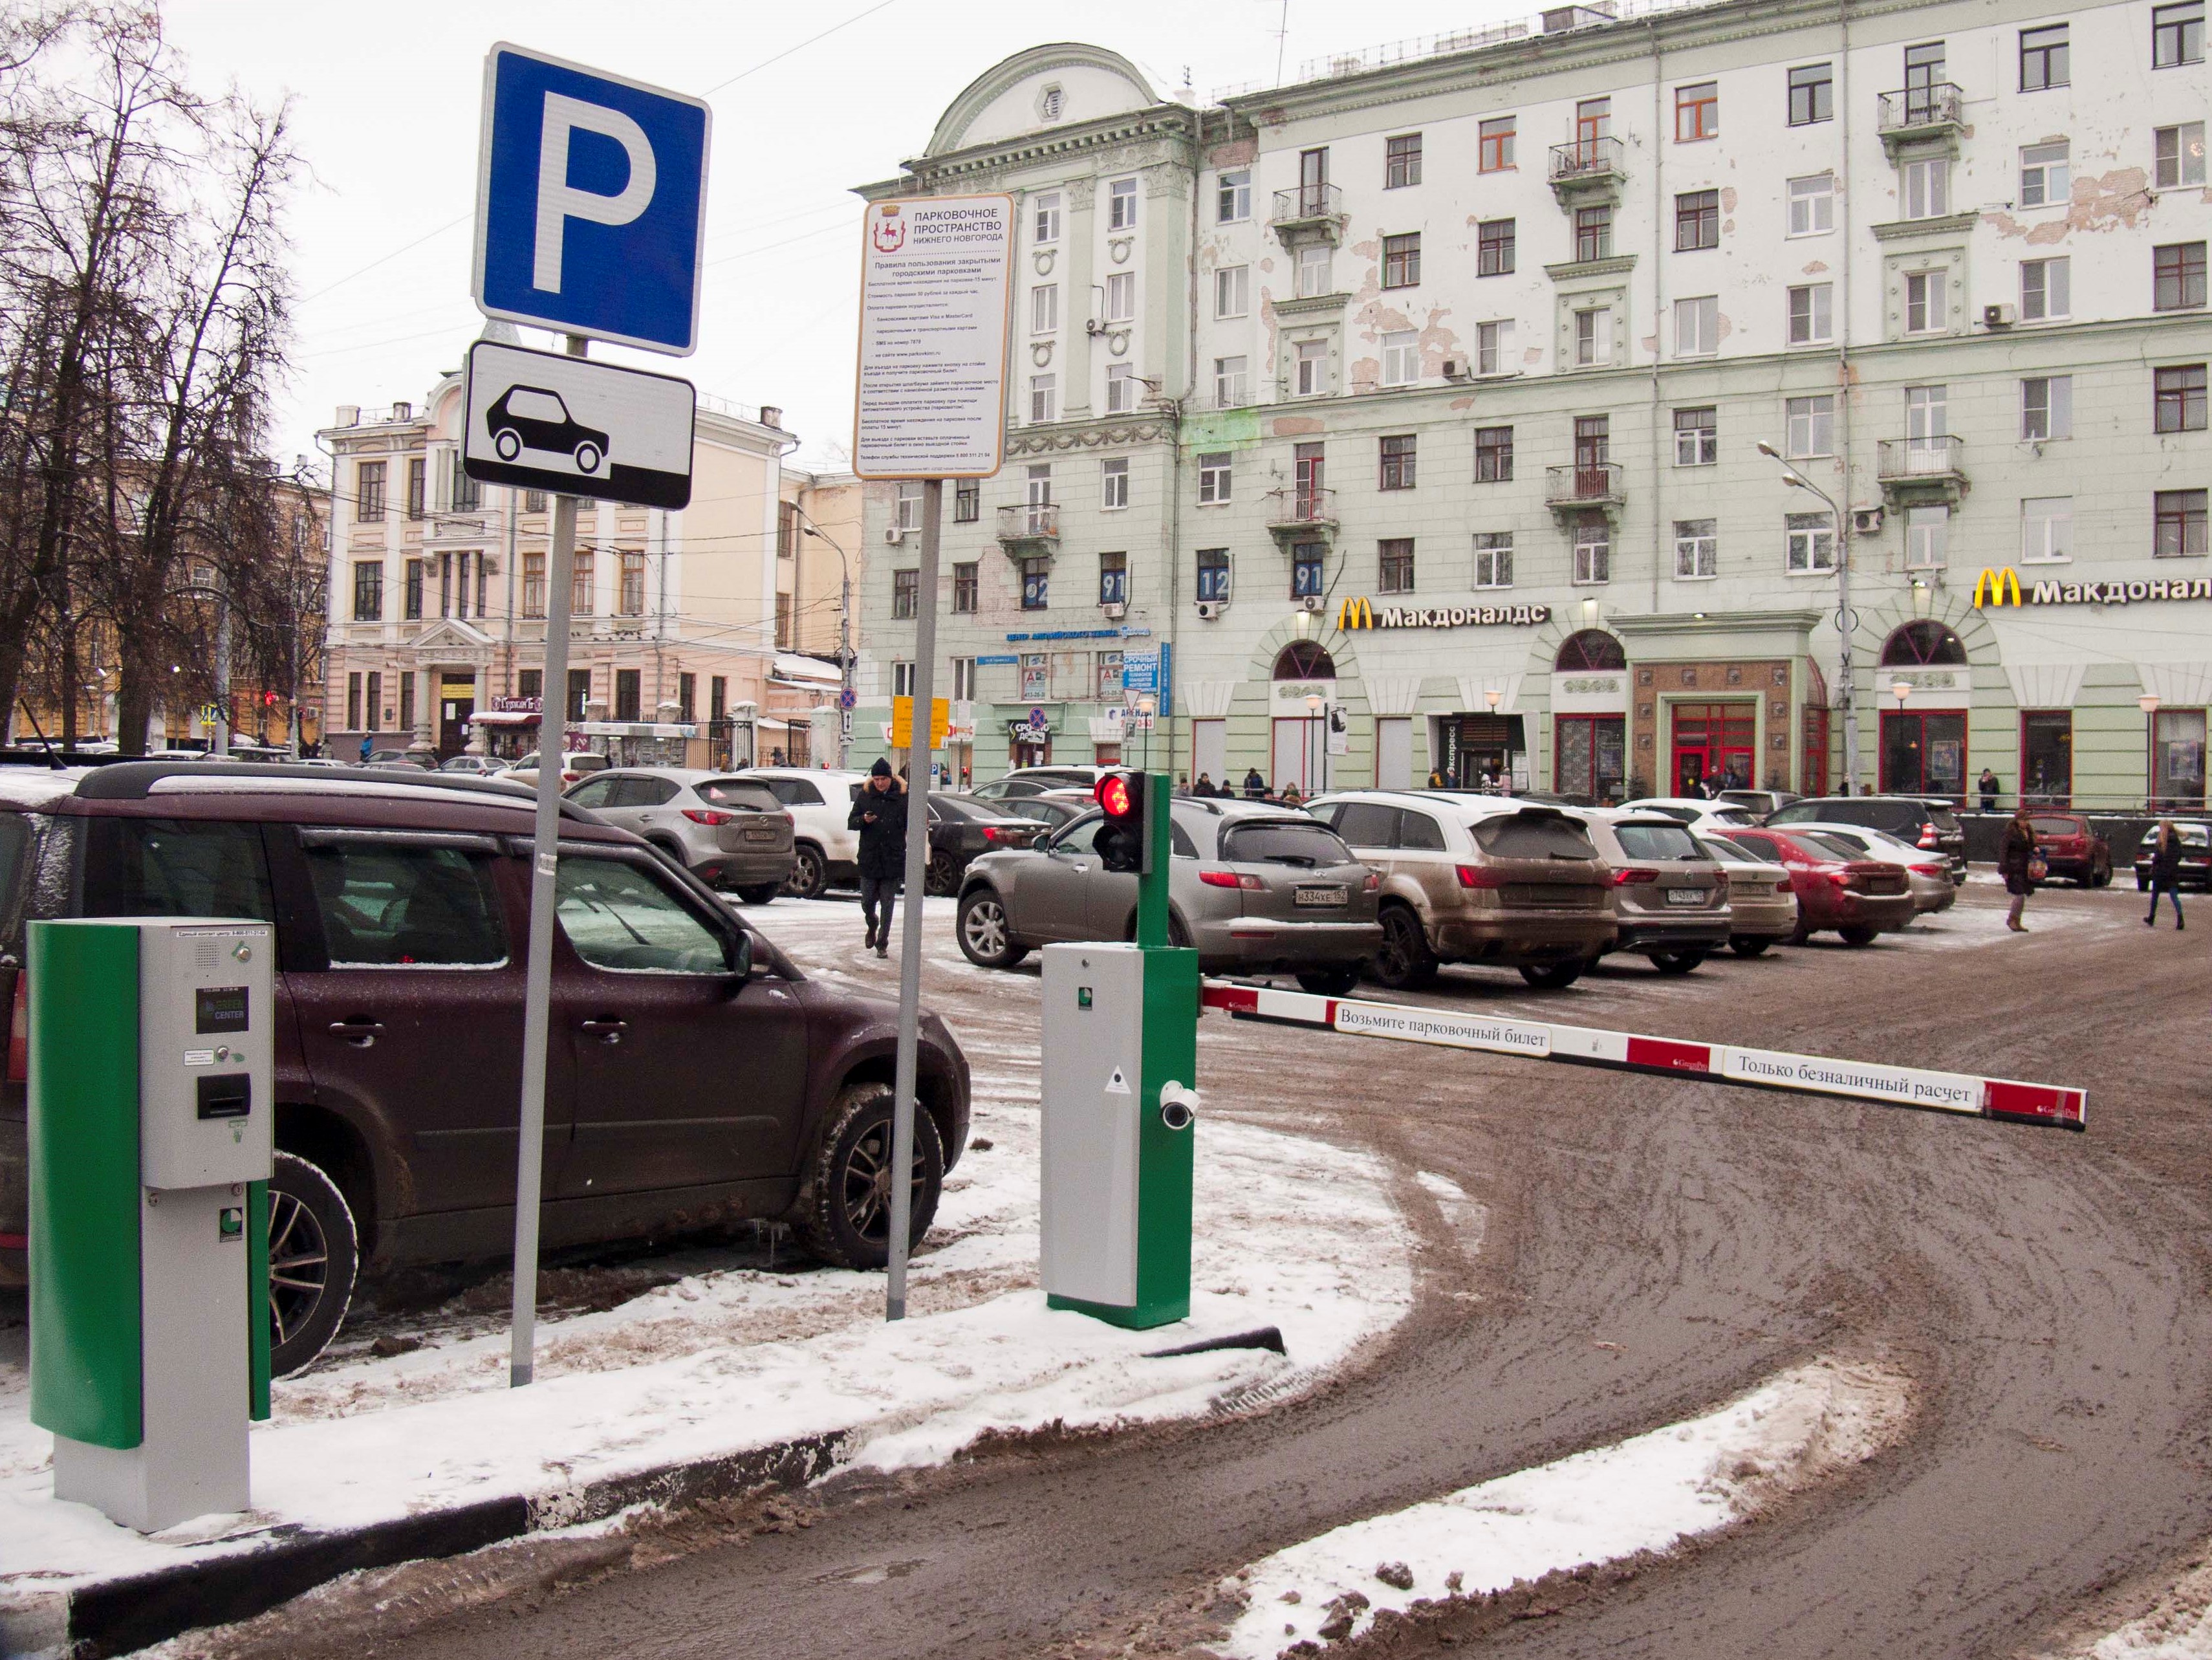 Нижегородцы высказались за создание перехватывающих парковок рядом с остановками  - фото 1